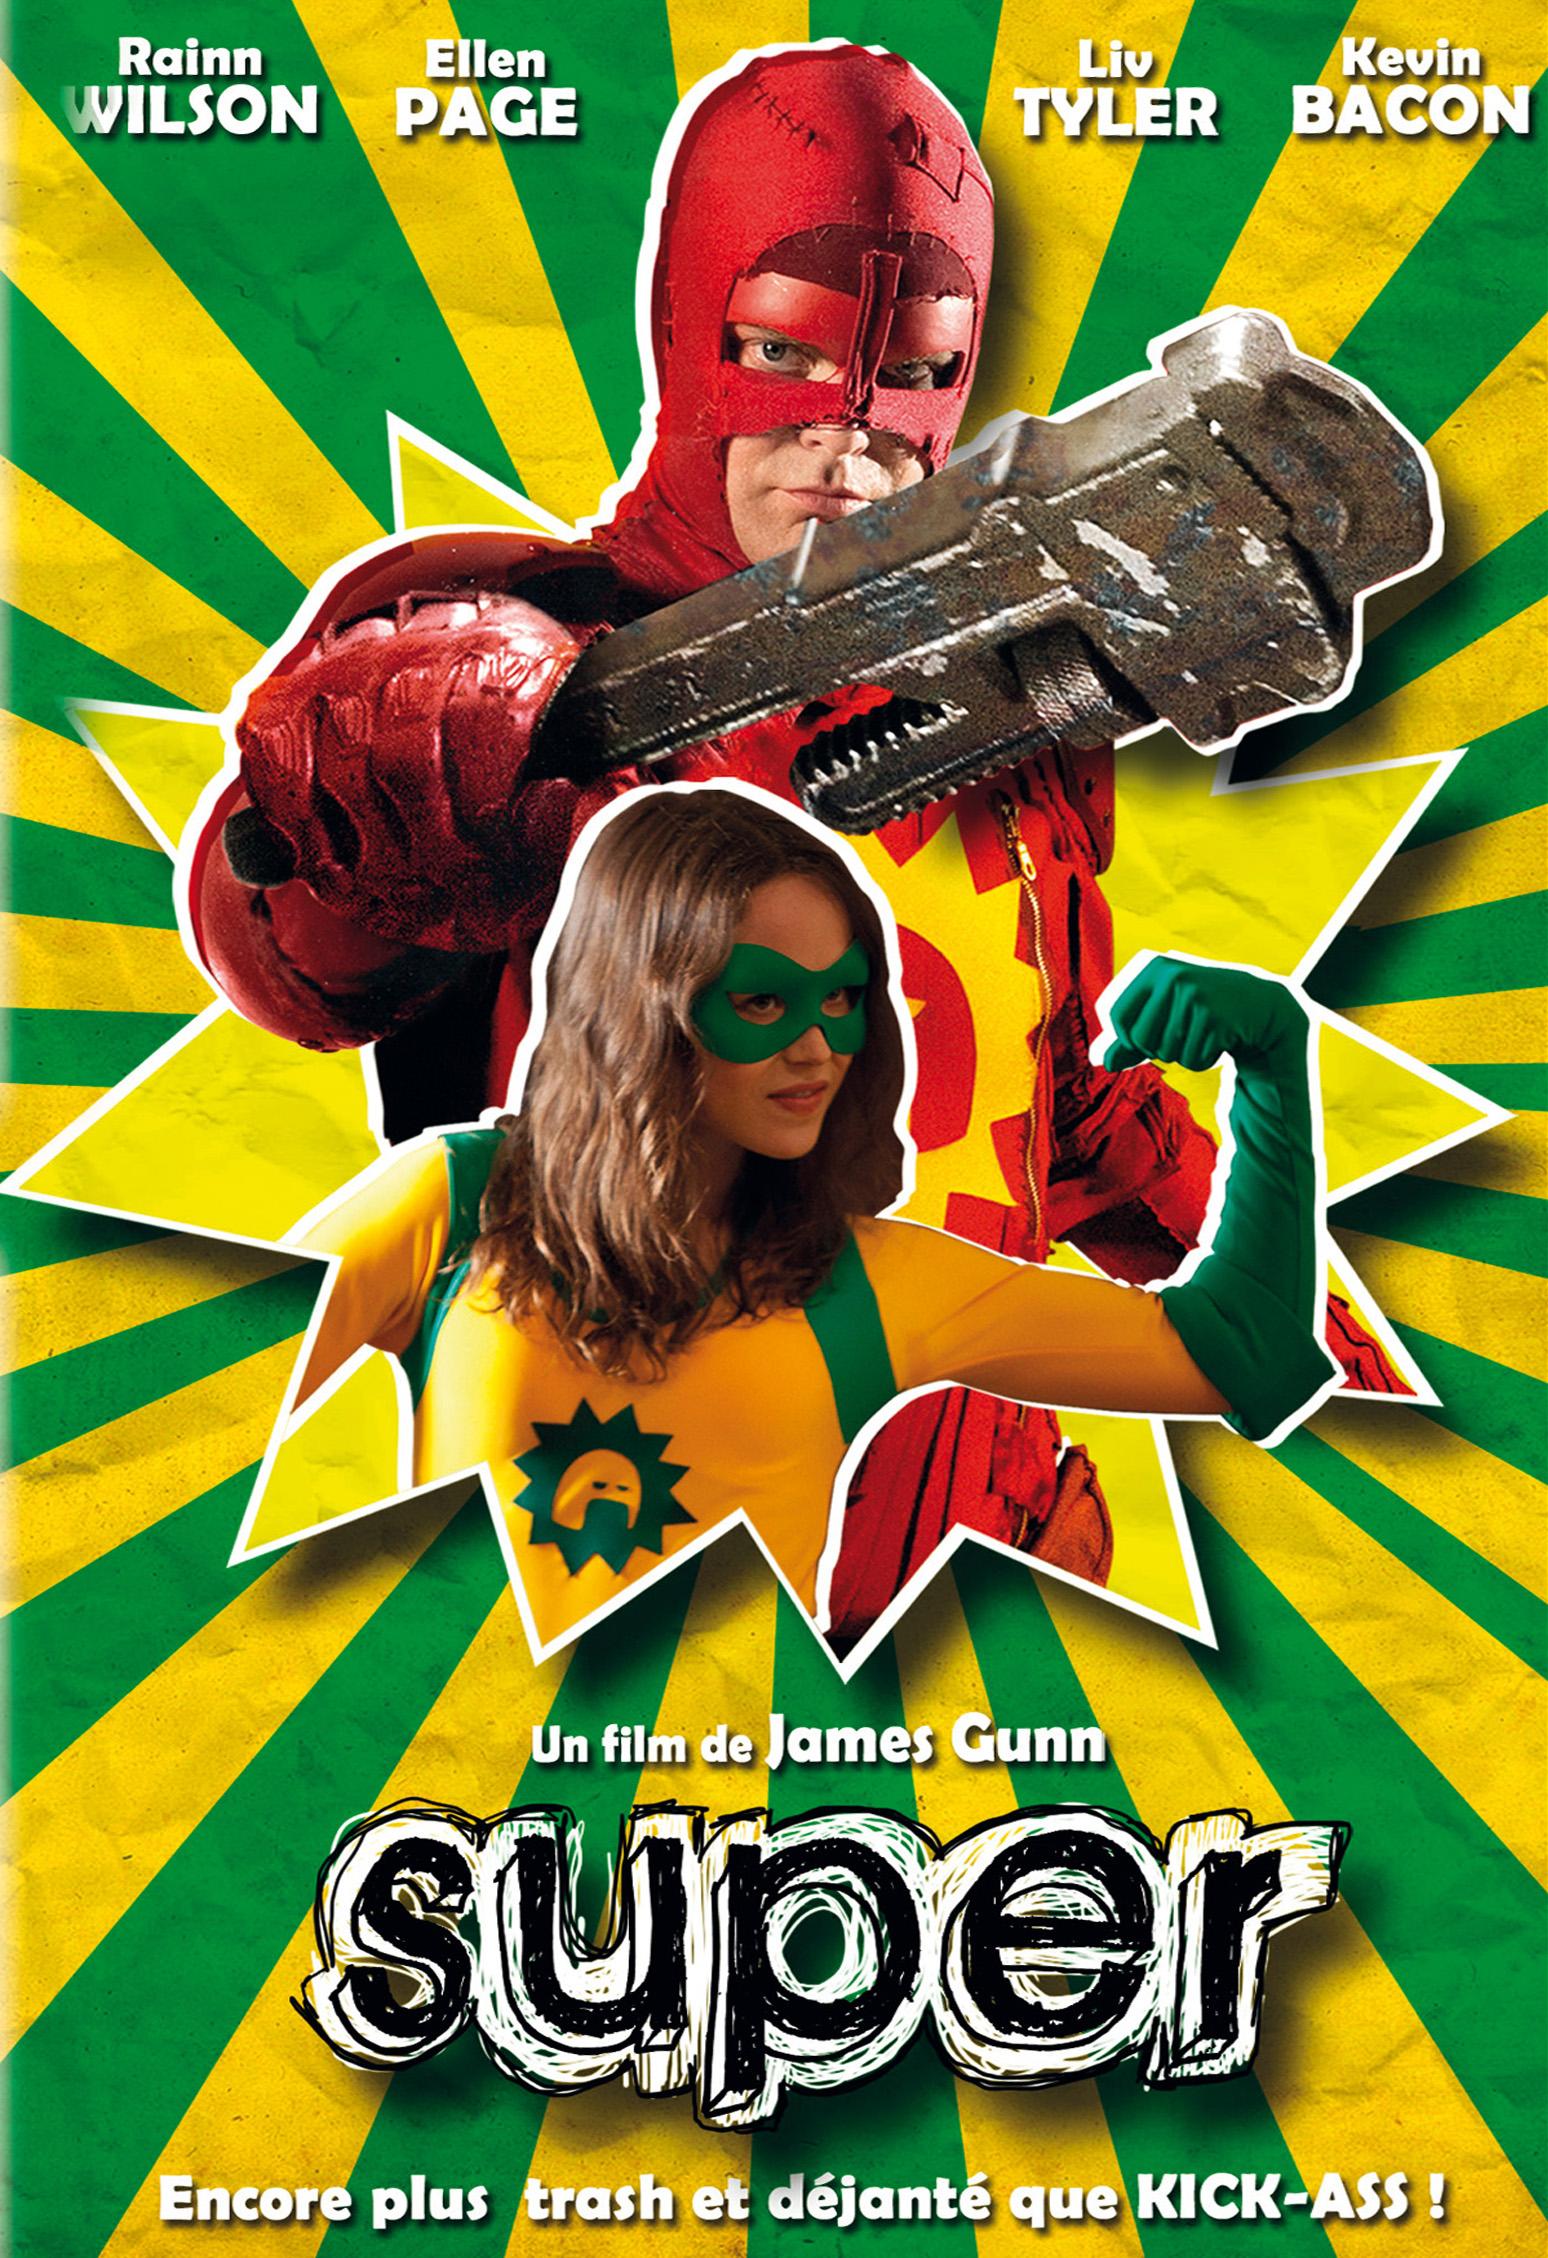 Super : Un film de héros ? Superlipopette ! (Test DVD)